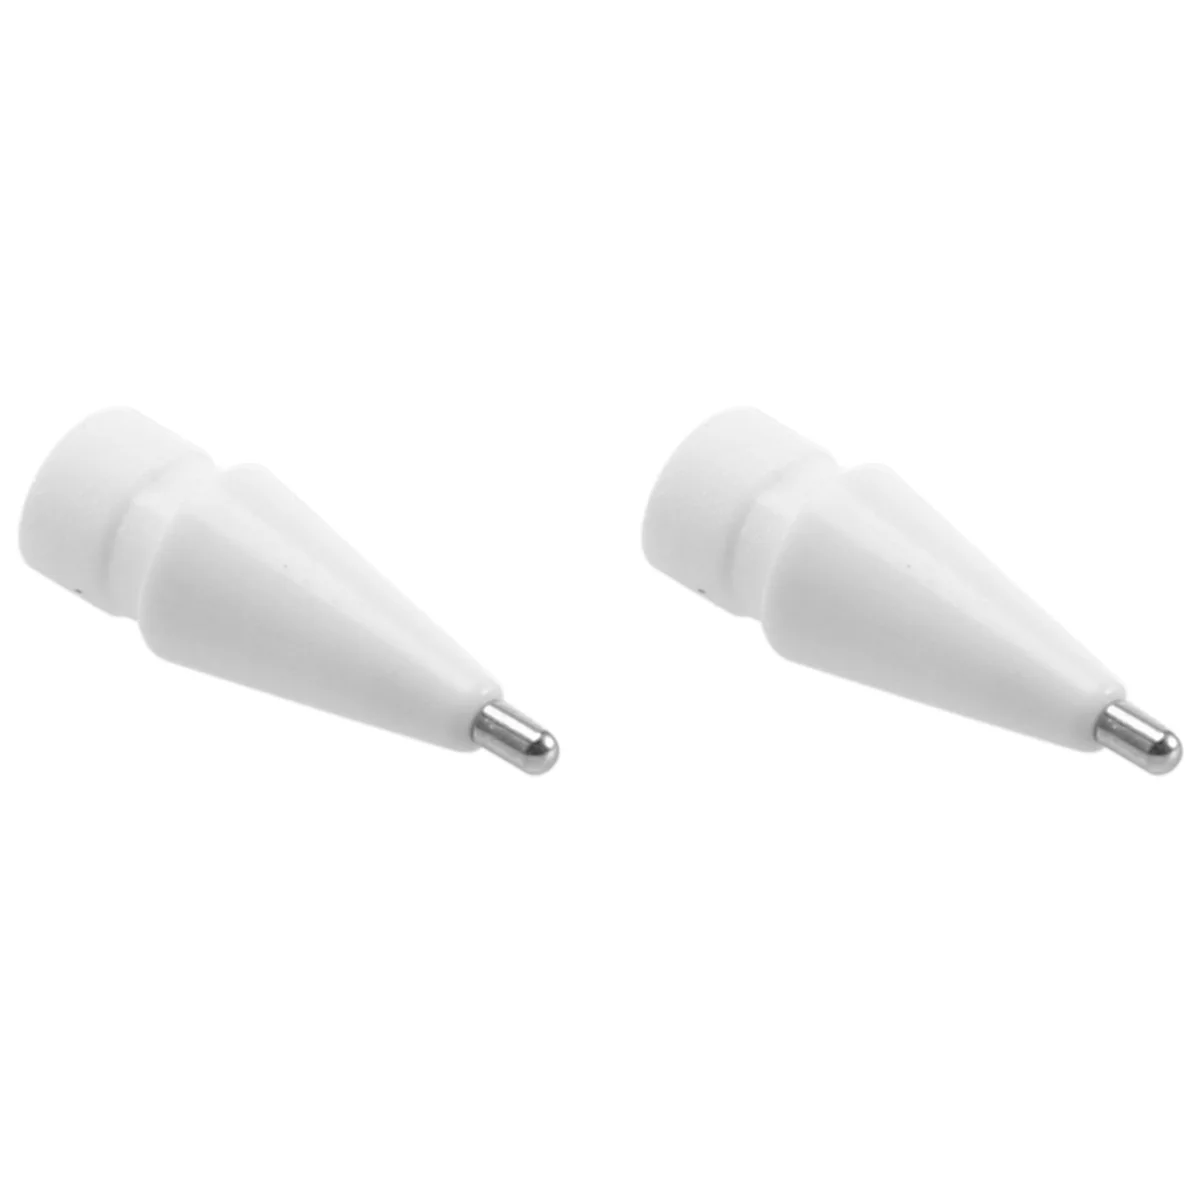 2 пакет молив съвети за Apple Pencil 1St Gen и 2Nd Gen / iPad Pro Pencil, 1mm Без износване Fine Point Precise Control Nibs